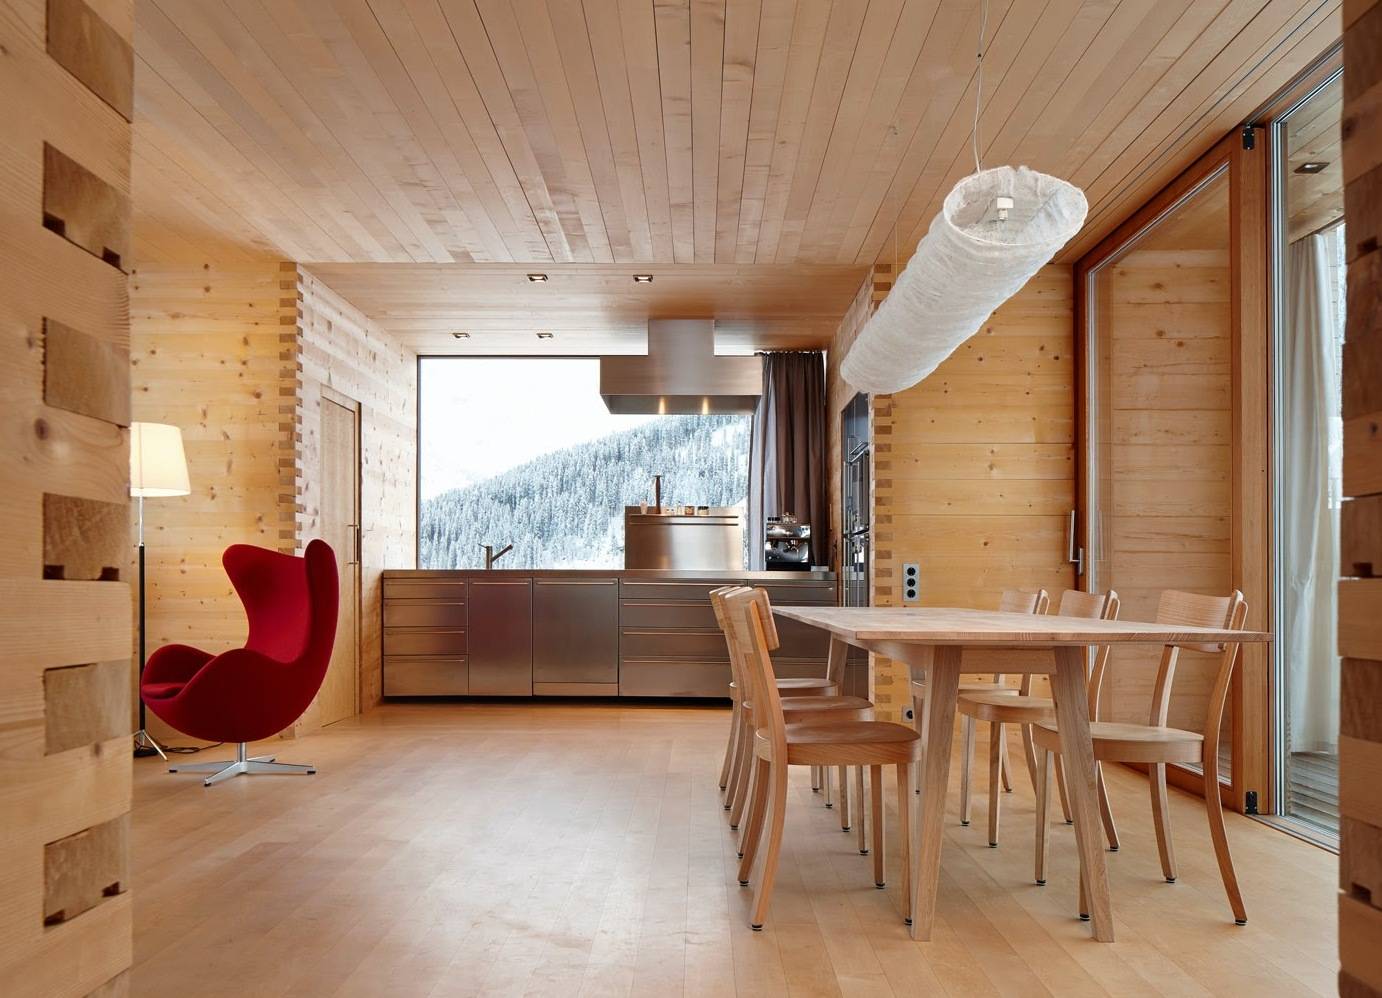 Дизайн деревянного потолка (45 фото): фото красивых потолочных покрытий из дерева, видео